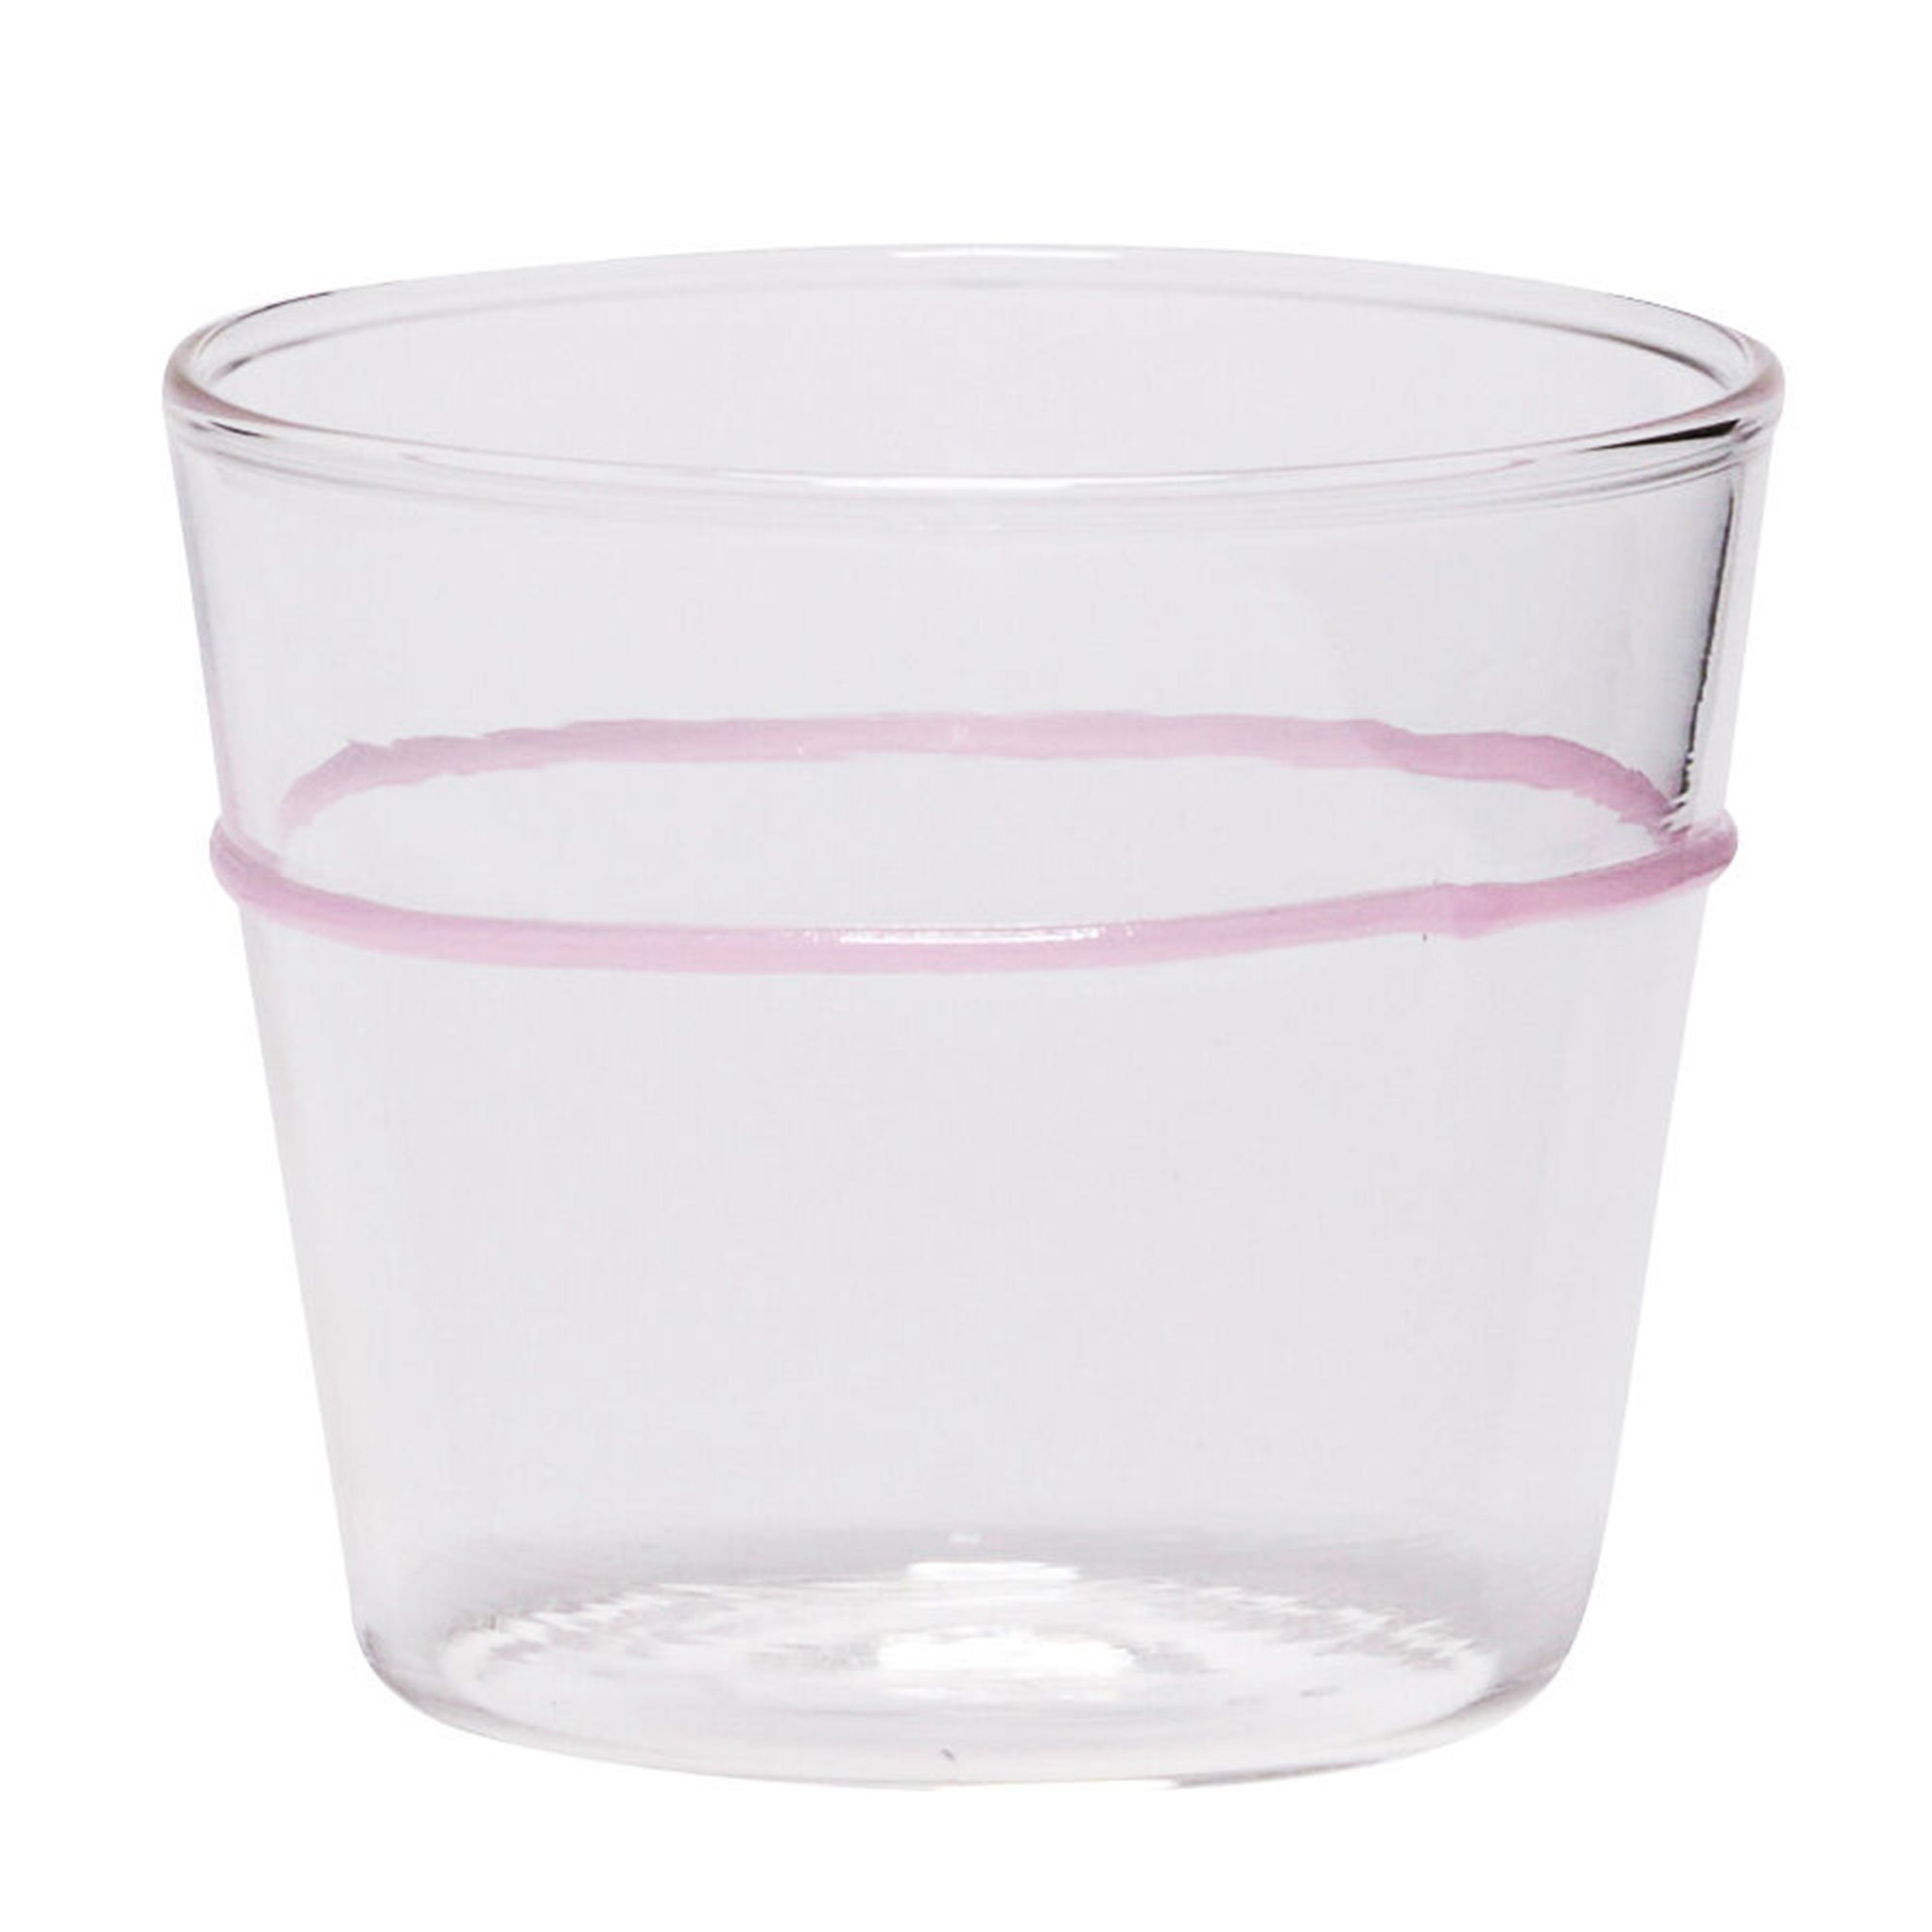 Hübsch Orbit vandglas lyserød